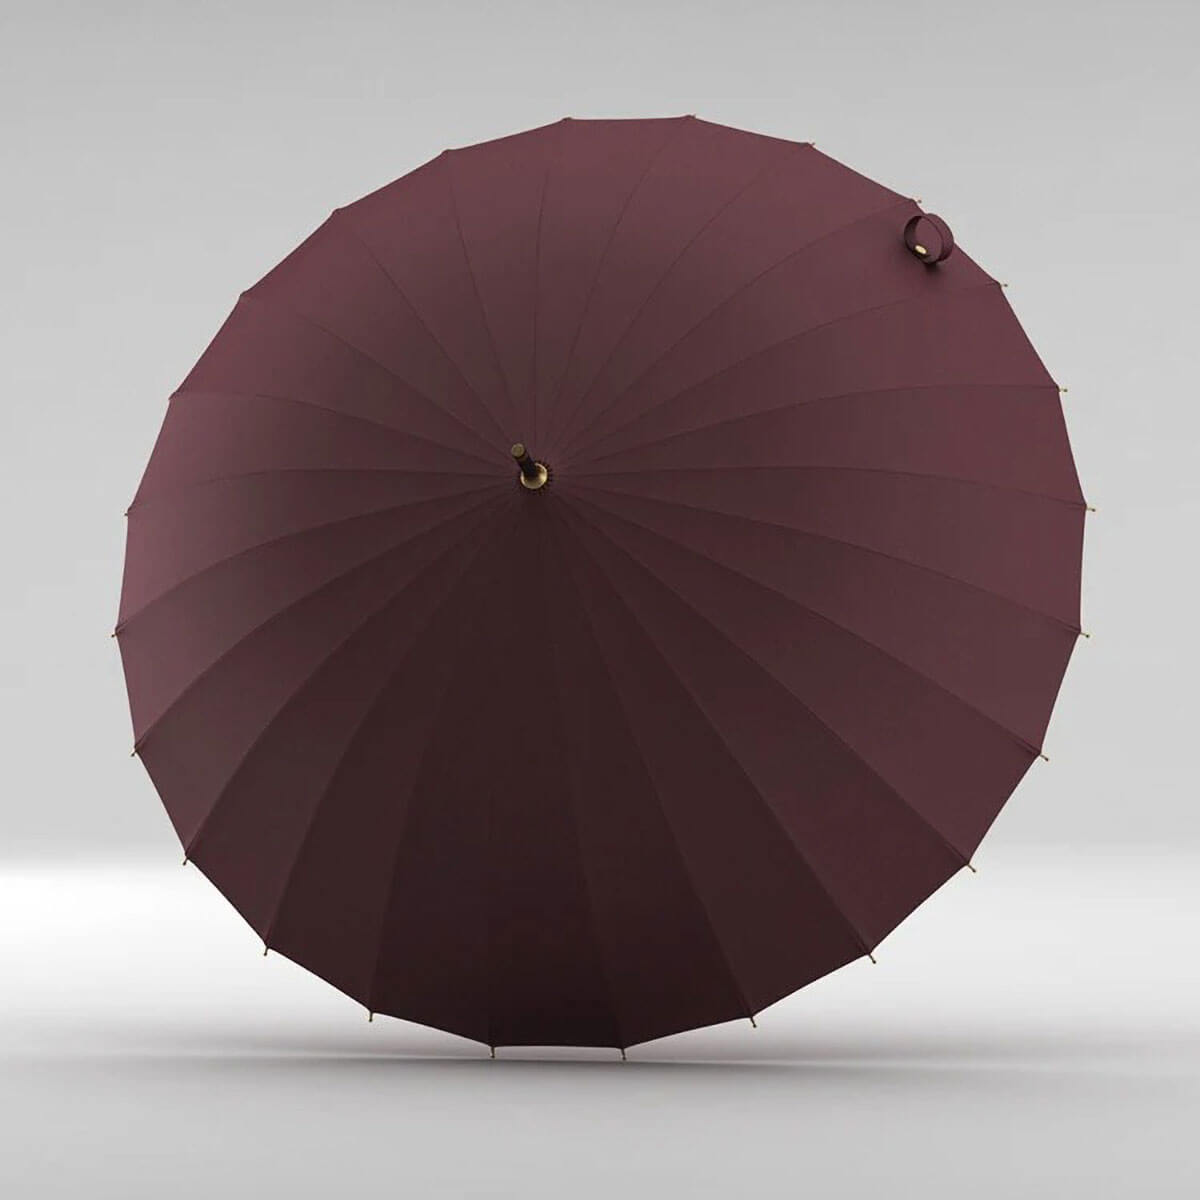 Whimsical Umbrella - Magical Fashion Accessory